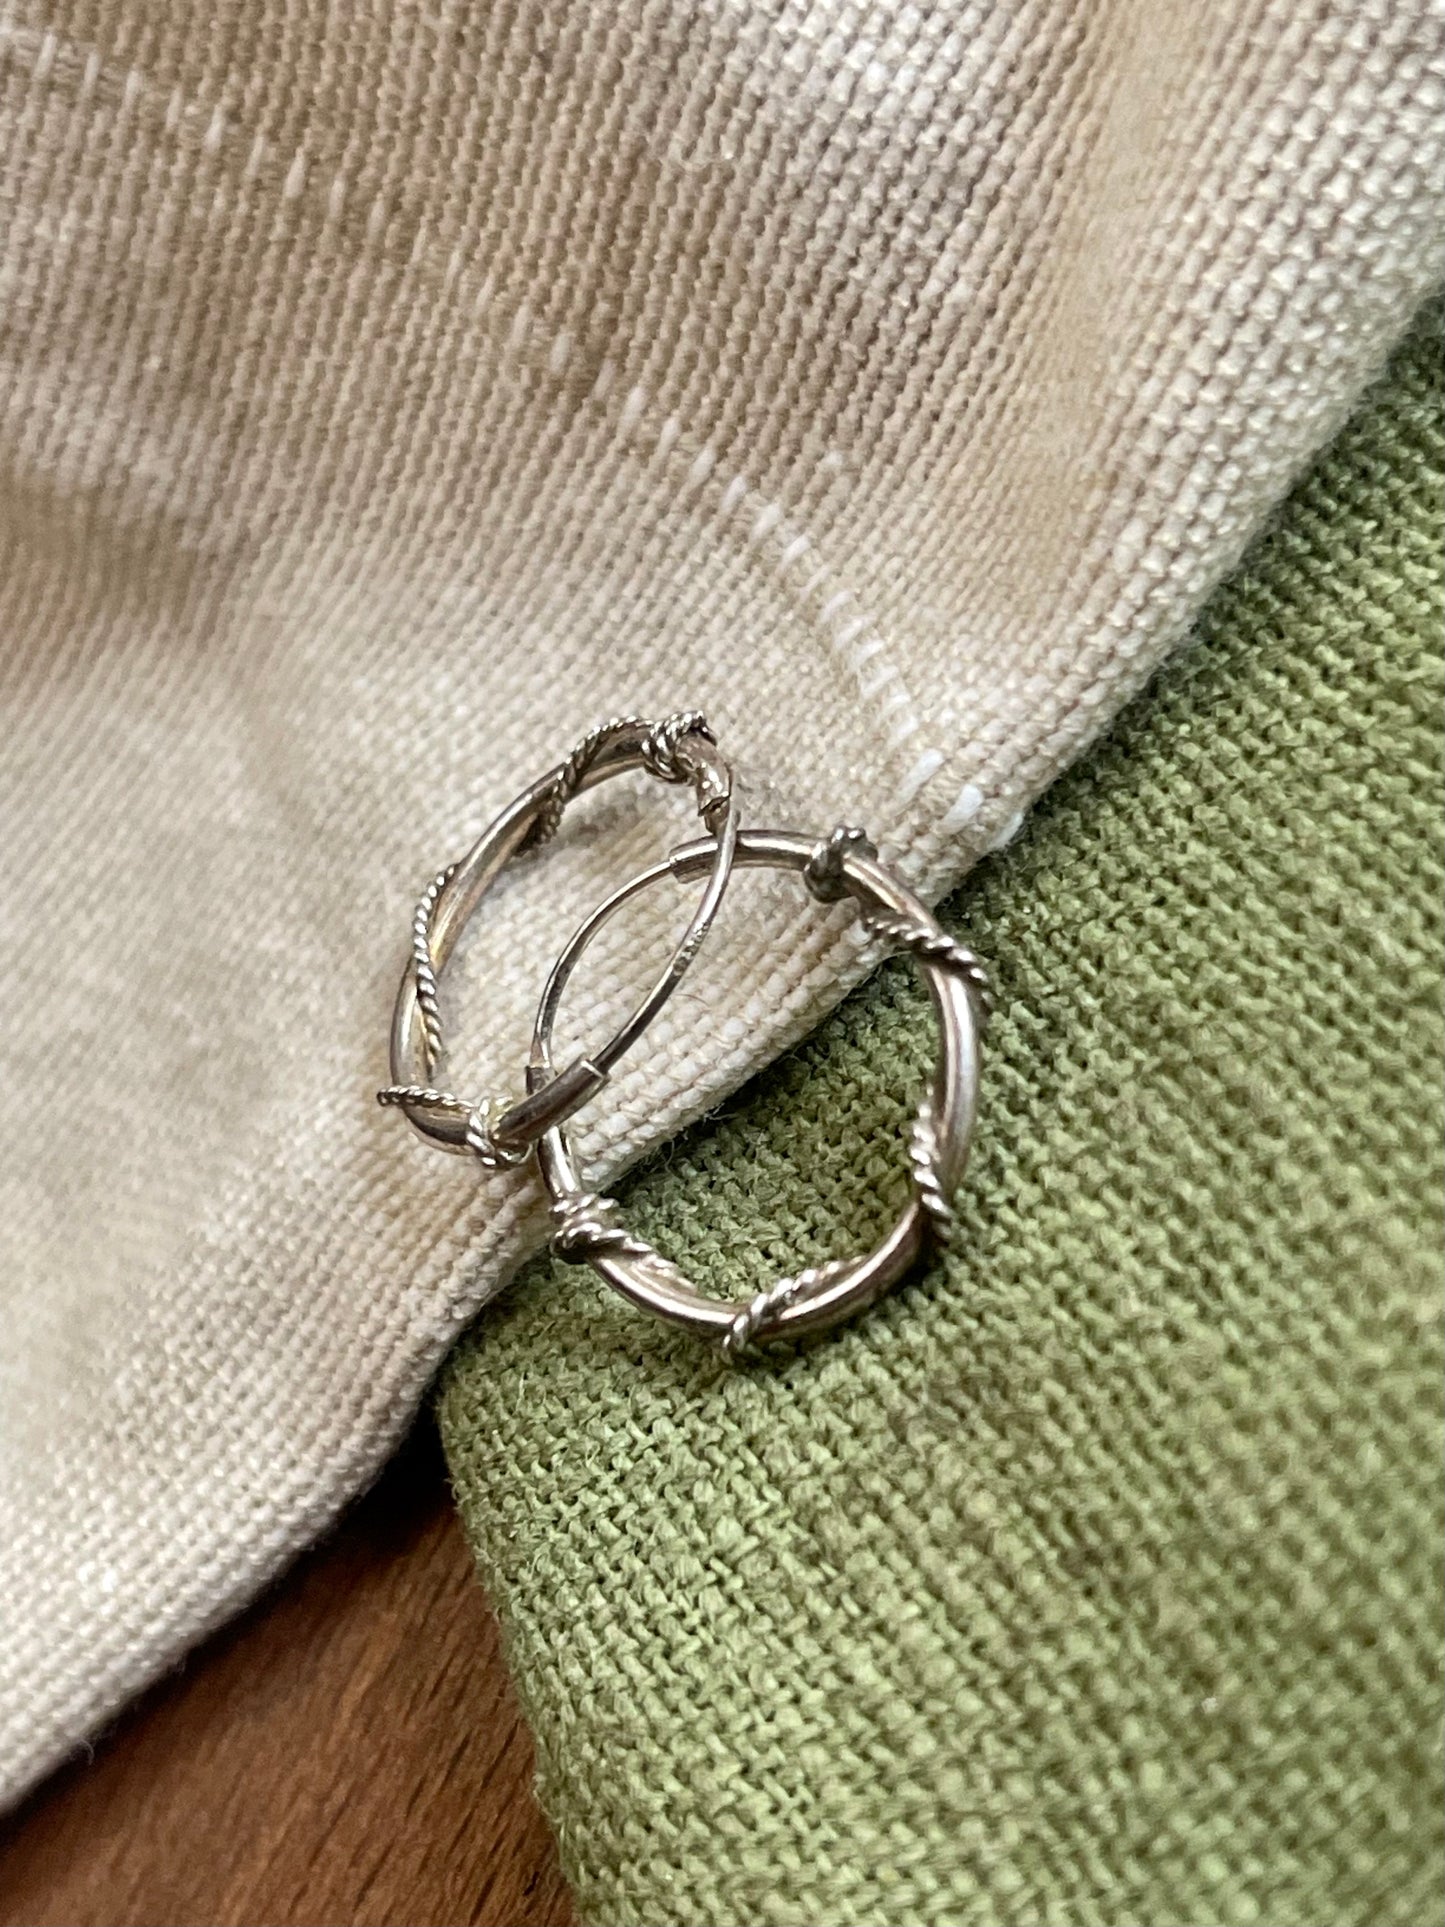 Twisted Loop Ring Hoop Earrings Solid Sterling 925 Silver Vintage Jewelry